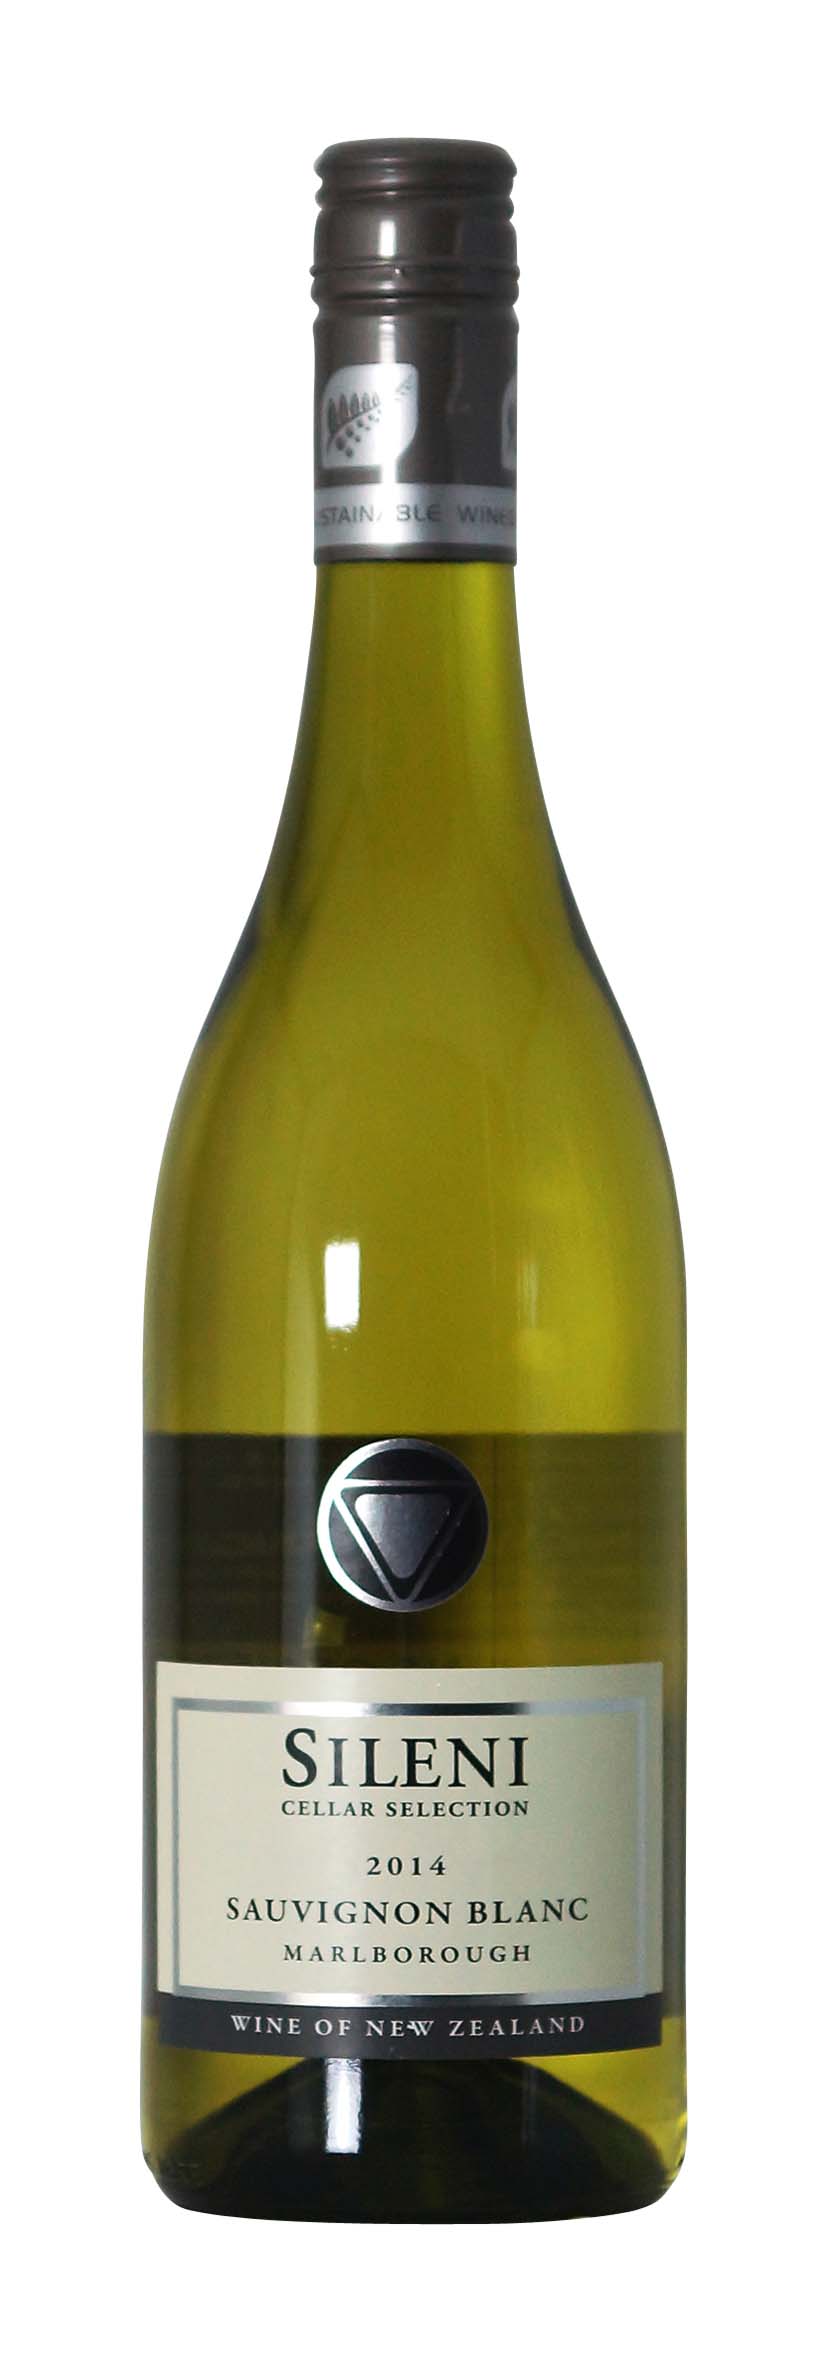 Cellar Selection Sauvignon Blanc 2014